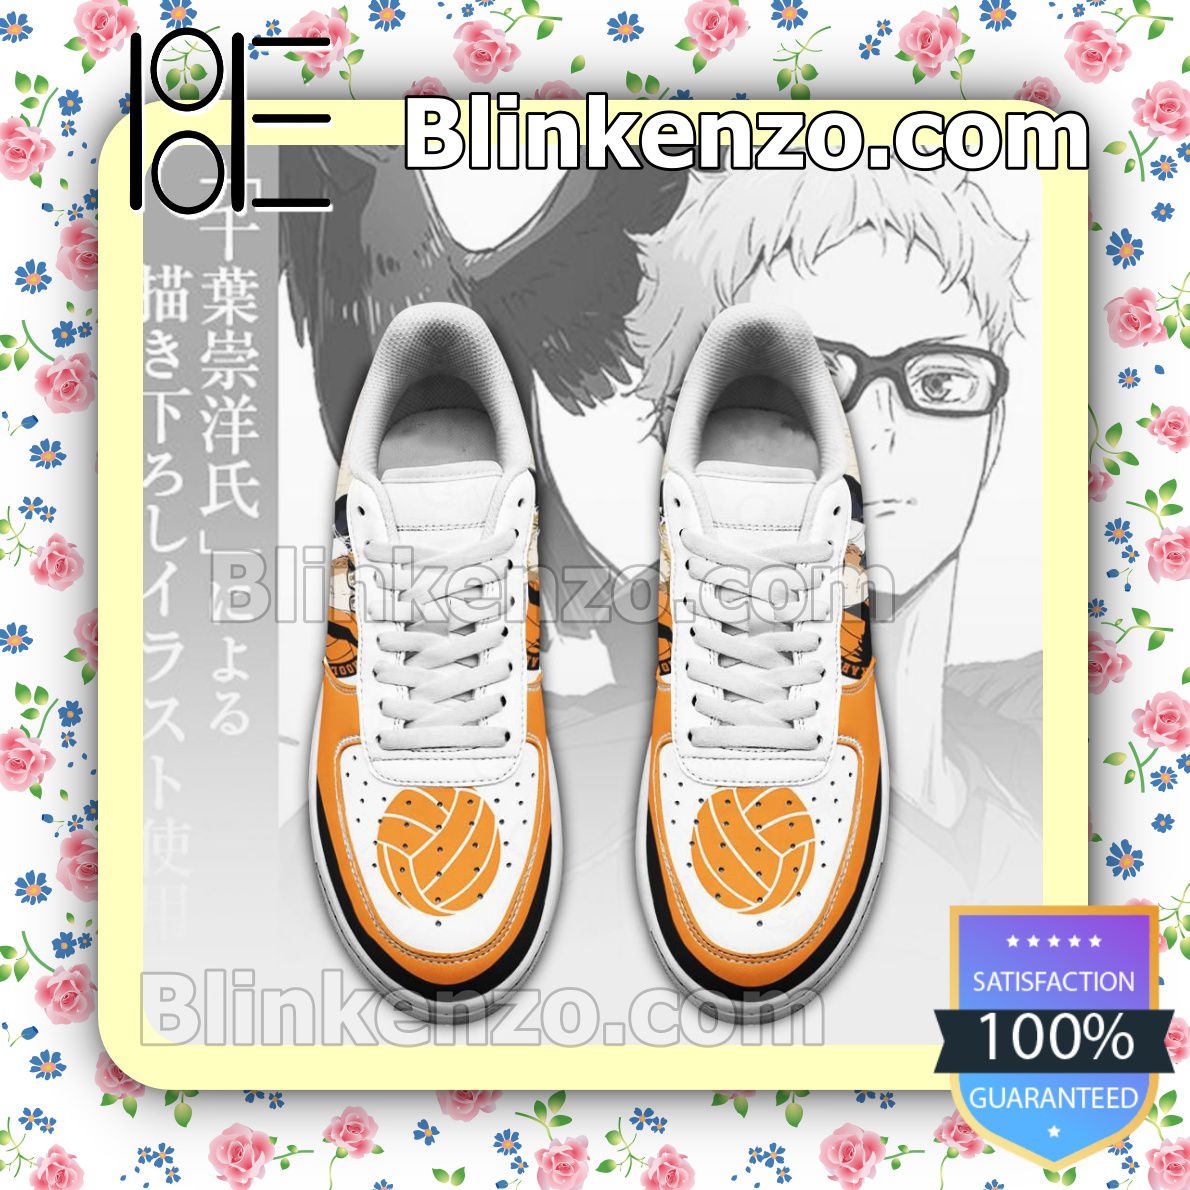 The cheapest Karasuno Kei Tsukishima Haikyuu Anime Nike Air Force Sneakers